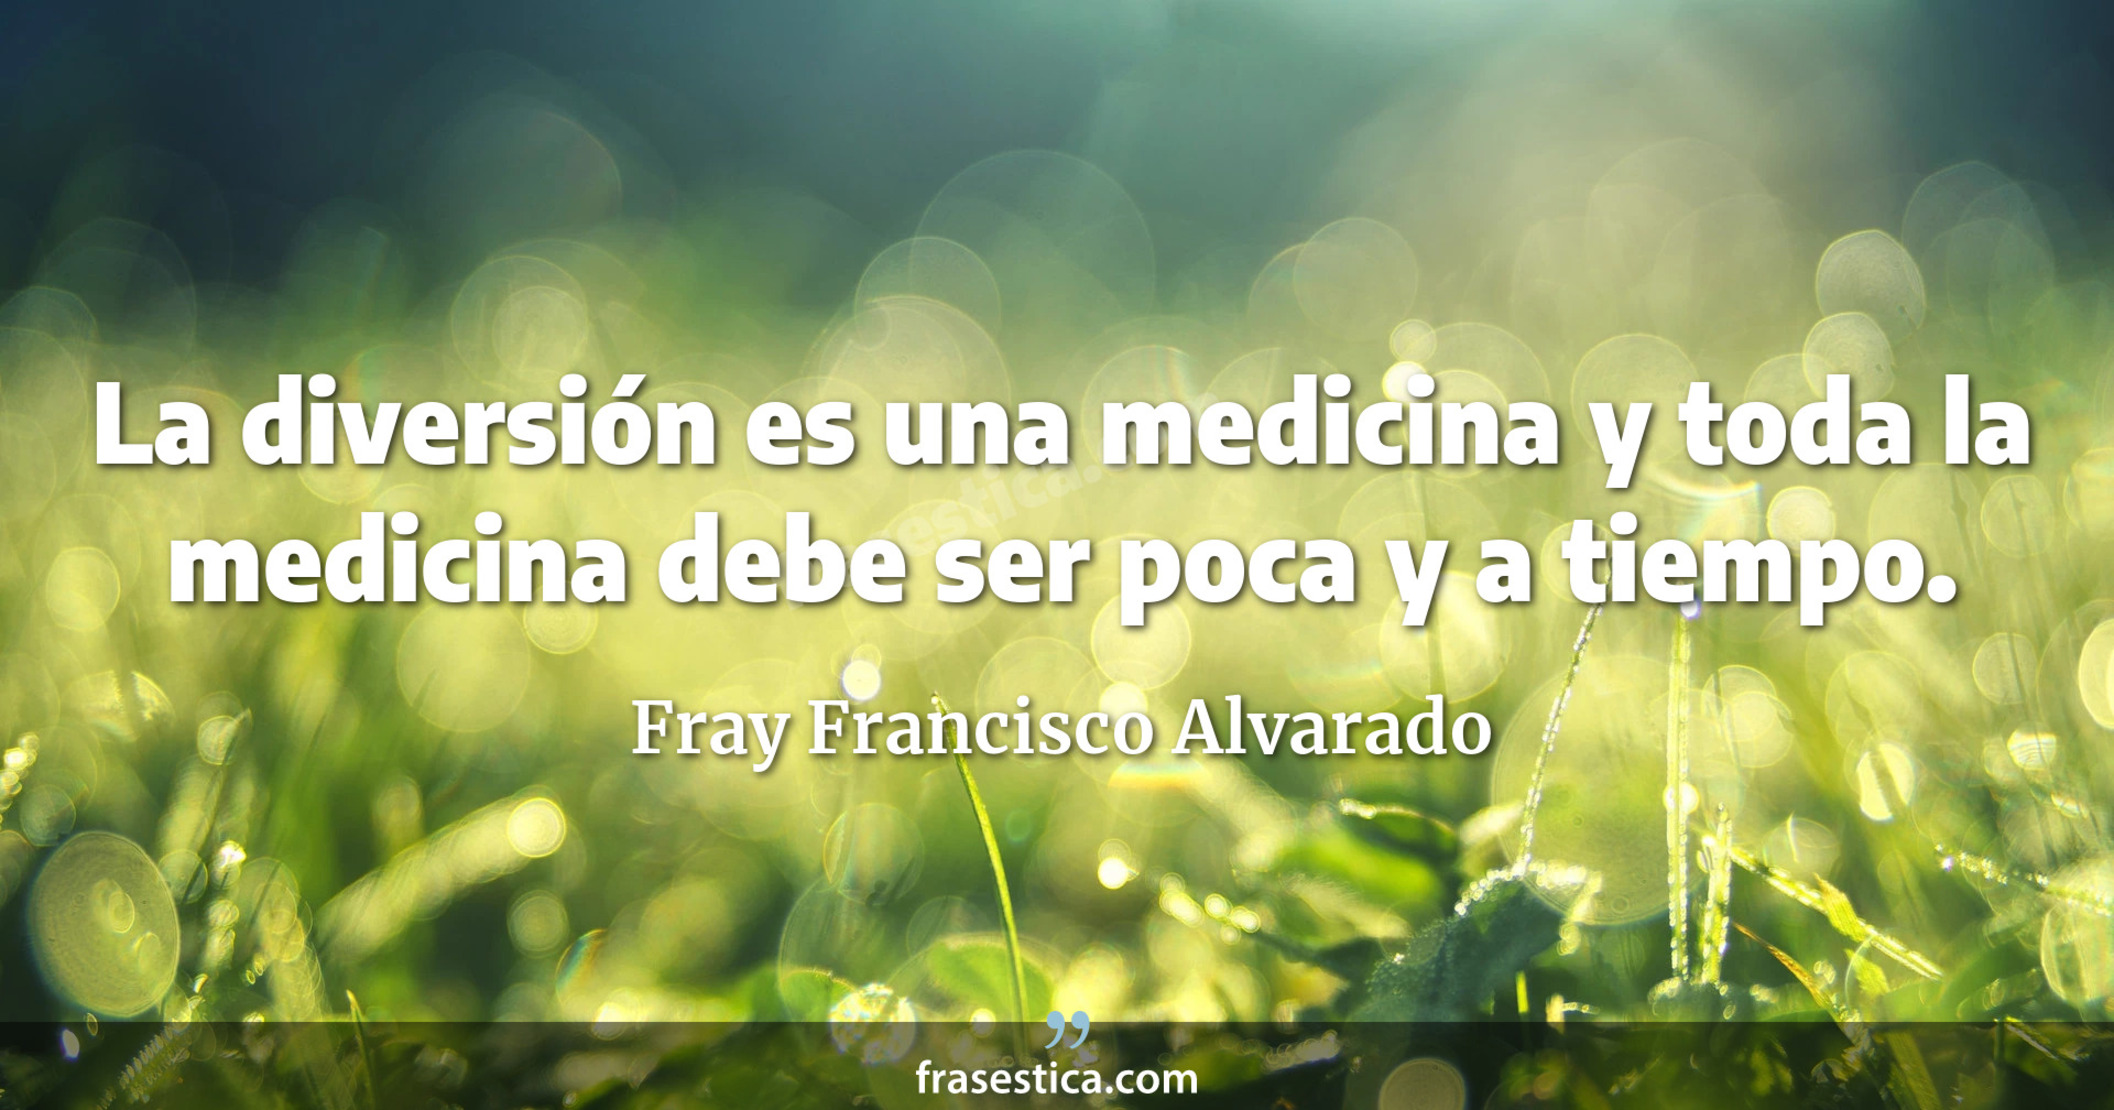 La diversión es una medicina y toda la medicina debe ser poca y a tiempo. - Fray Francisco Alvarado